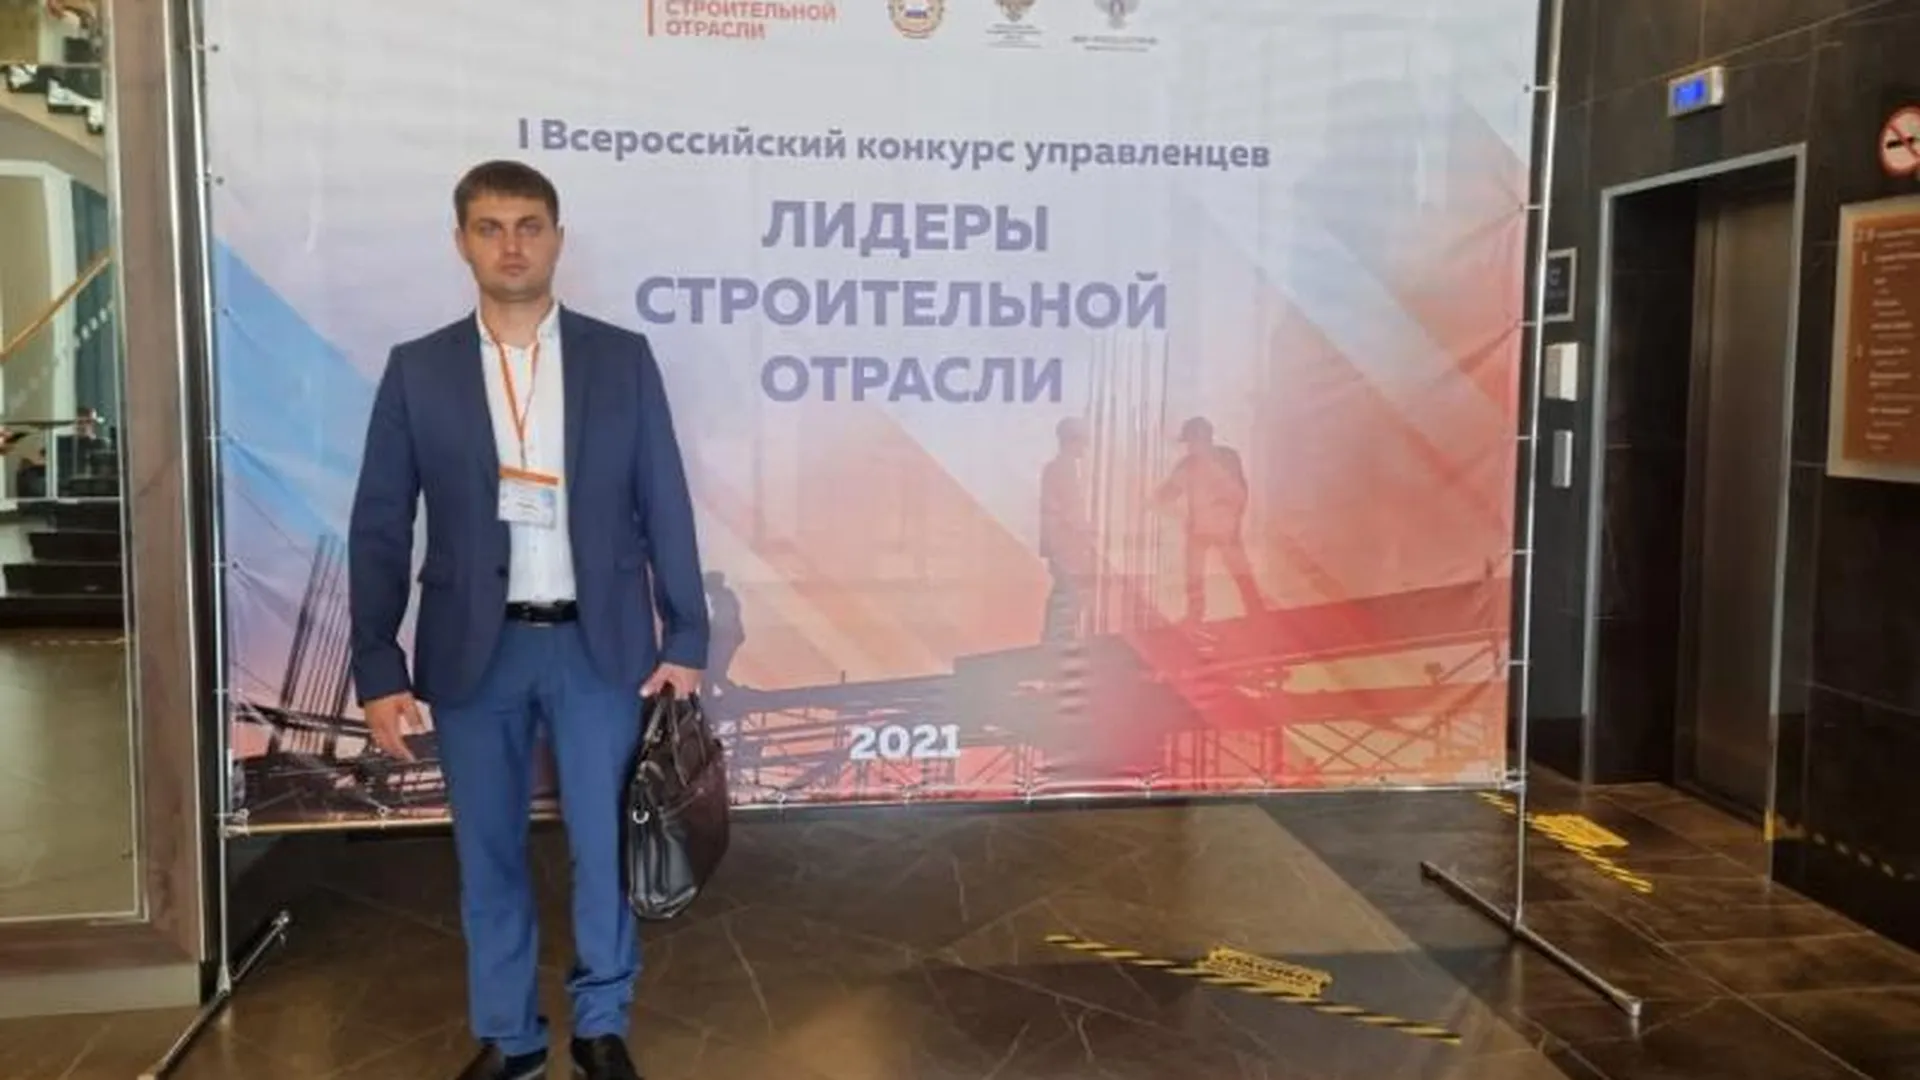 Специалист из Подмосковья вышел в финал всероссийского конкурса «Лидеры строительной отрасли»